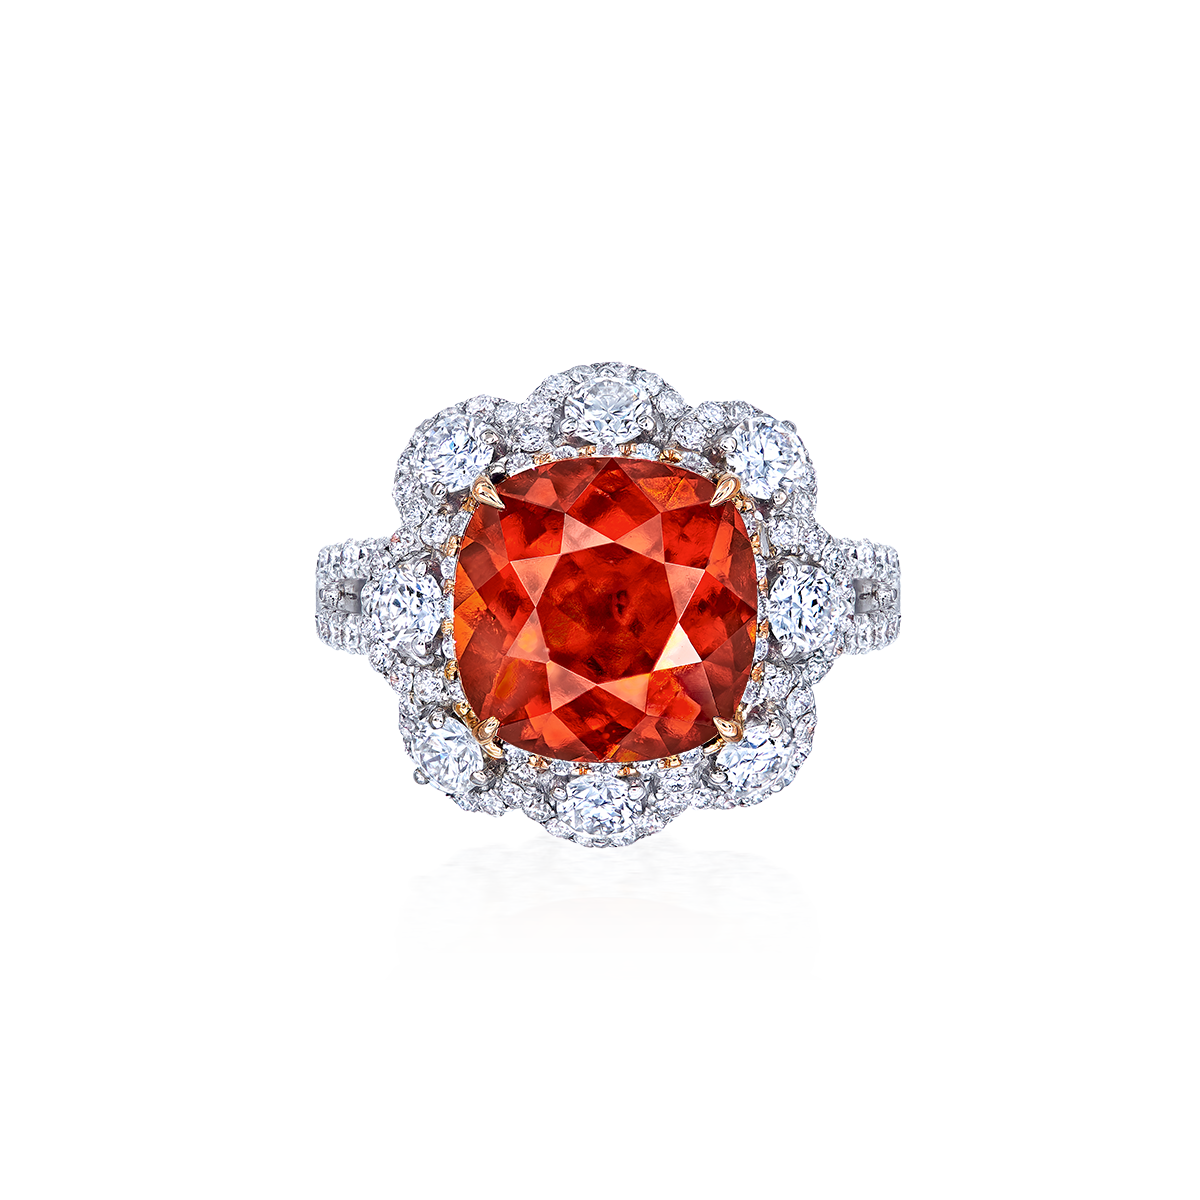 6.09克拉 鈣鋁榴石鑽戒
Natural Hessonite -Grossular Garnet 
and Diamond Ring